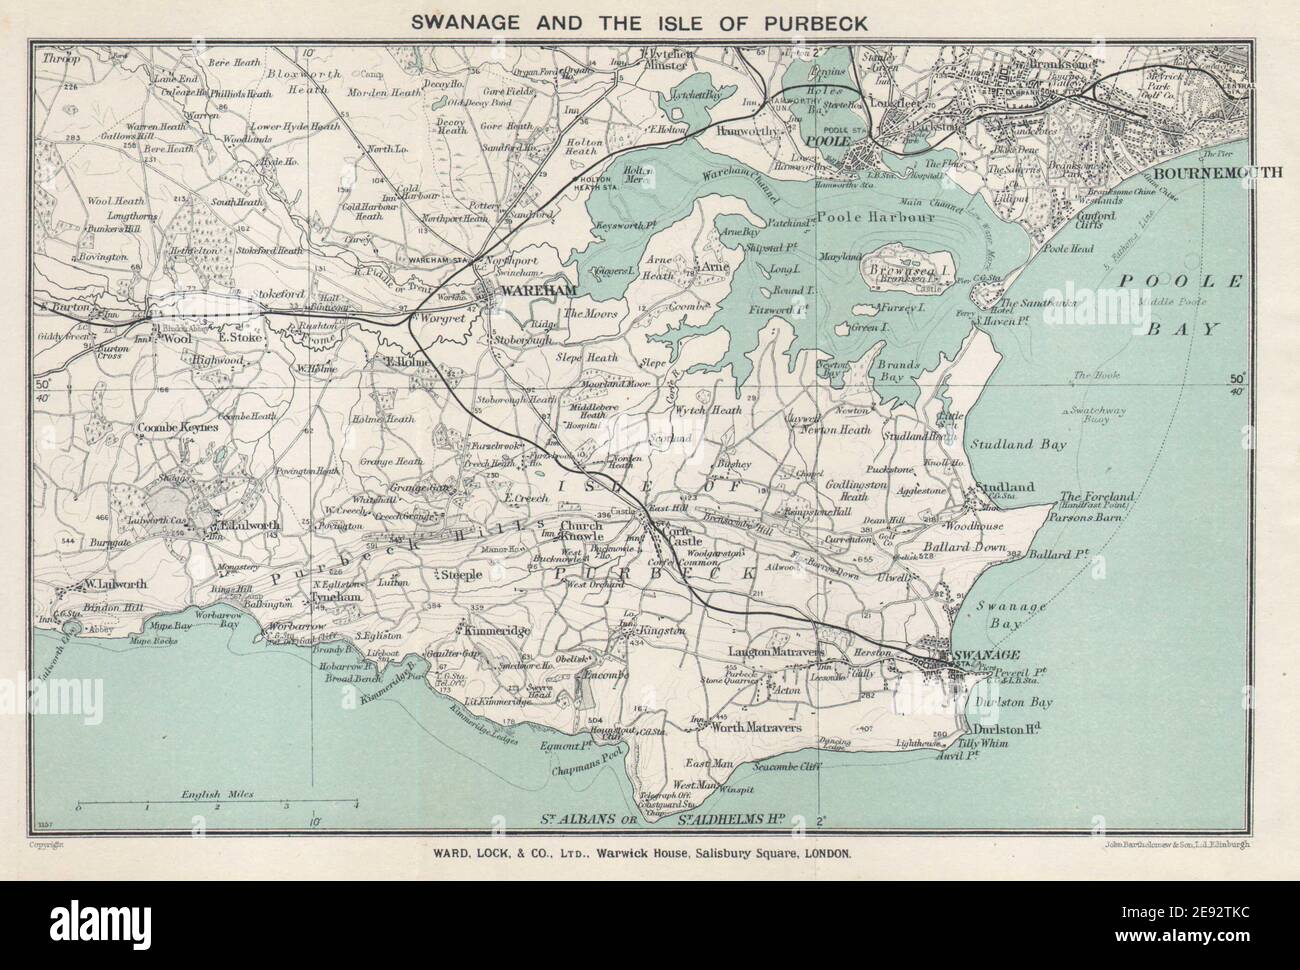 ISLA DE PURBECK. Swanage Wareham Bournemouth Poole. Dorset. Mapa DE BLOQUEO DE BARRIO 1931 Foto de stock